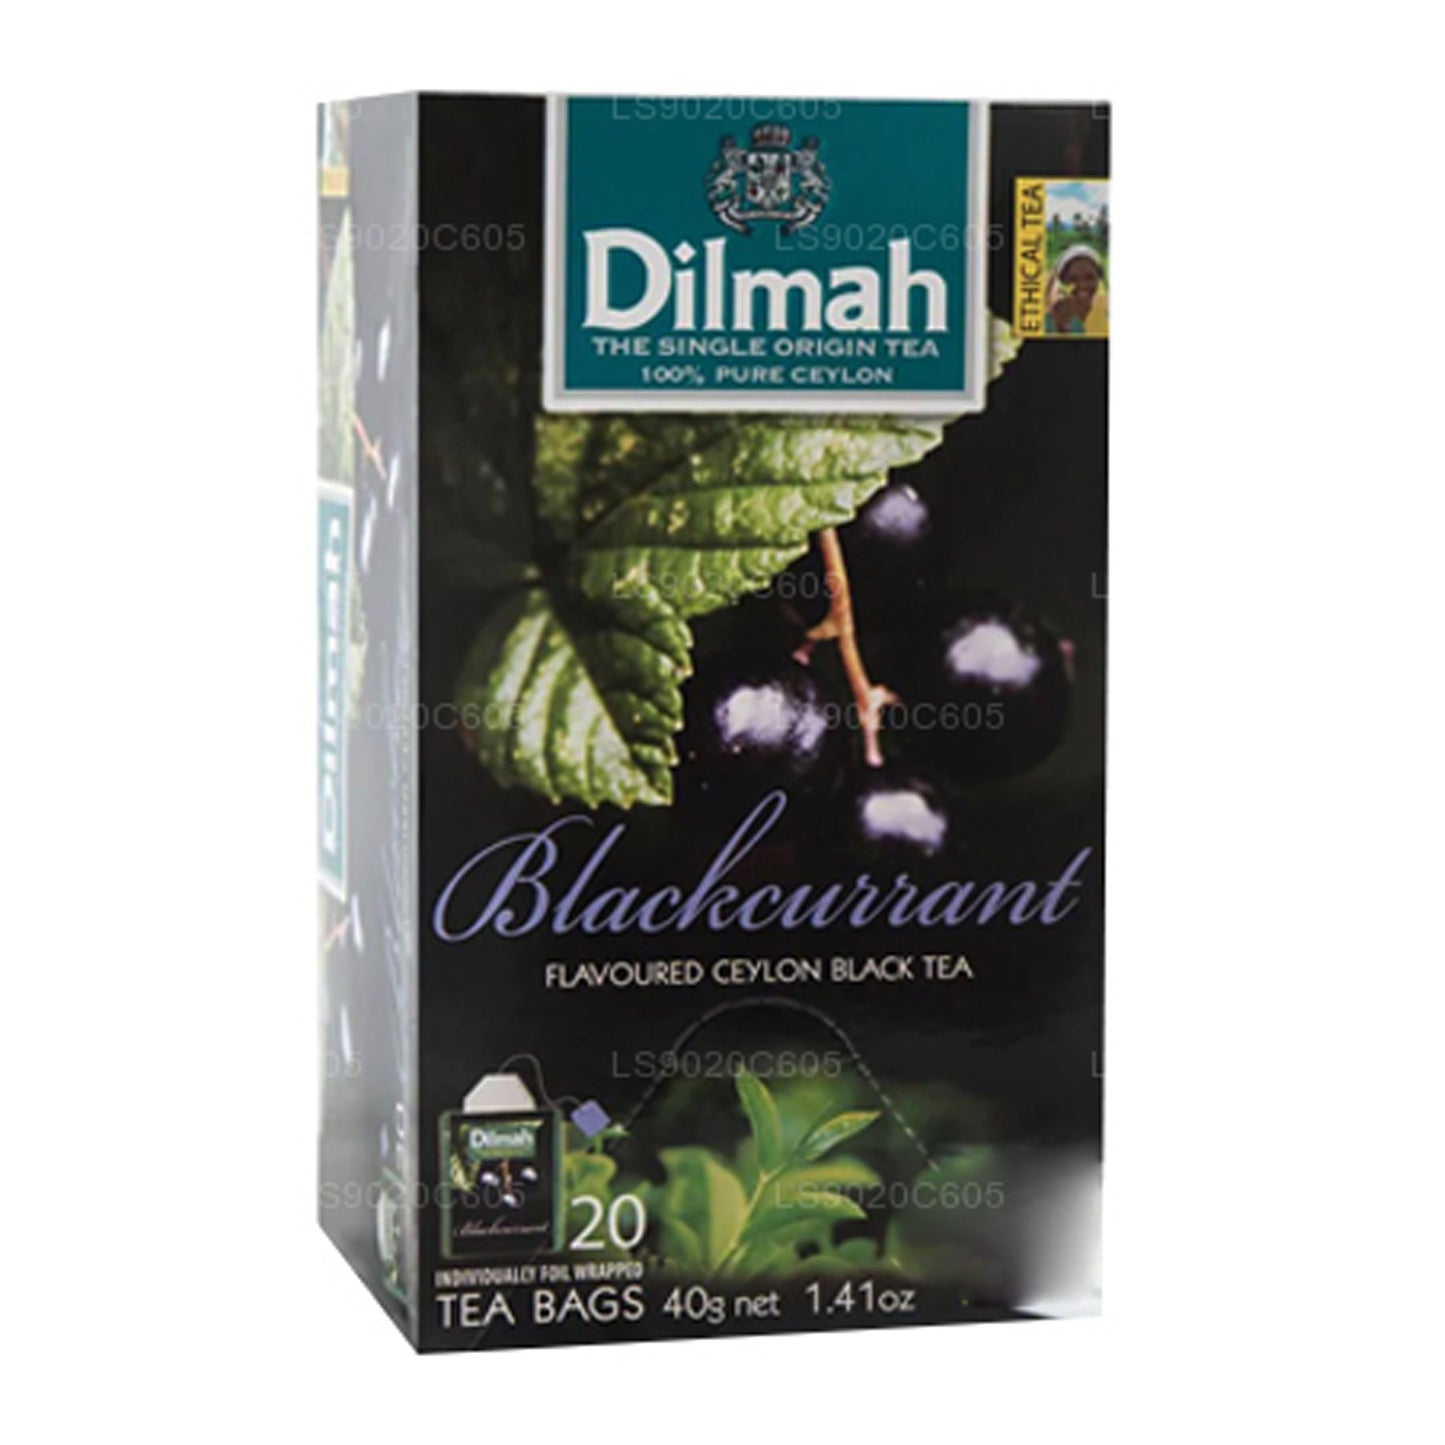 Dilmah 黑醋栗味茶 (40g) 20 茶包